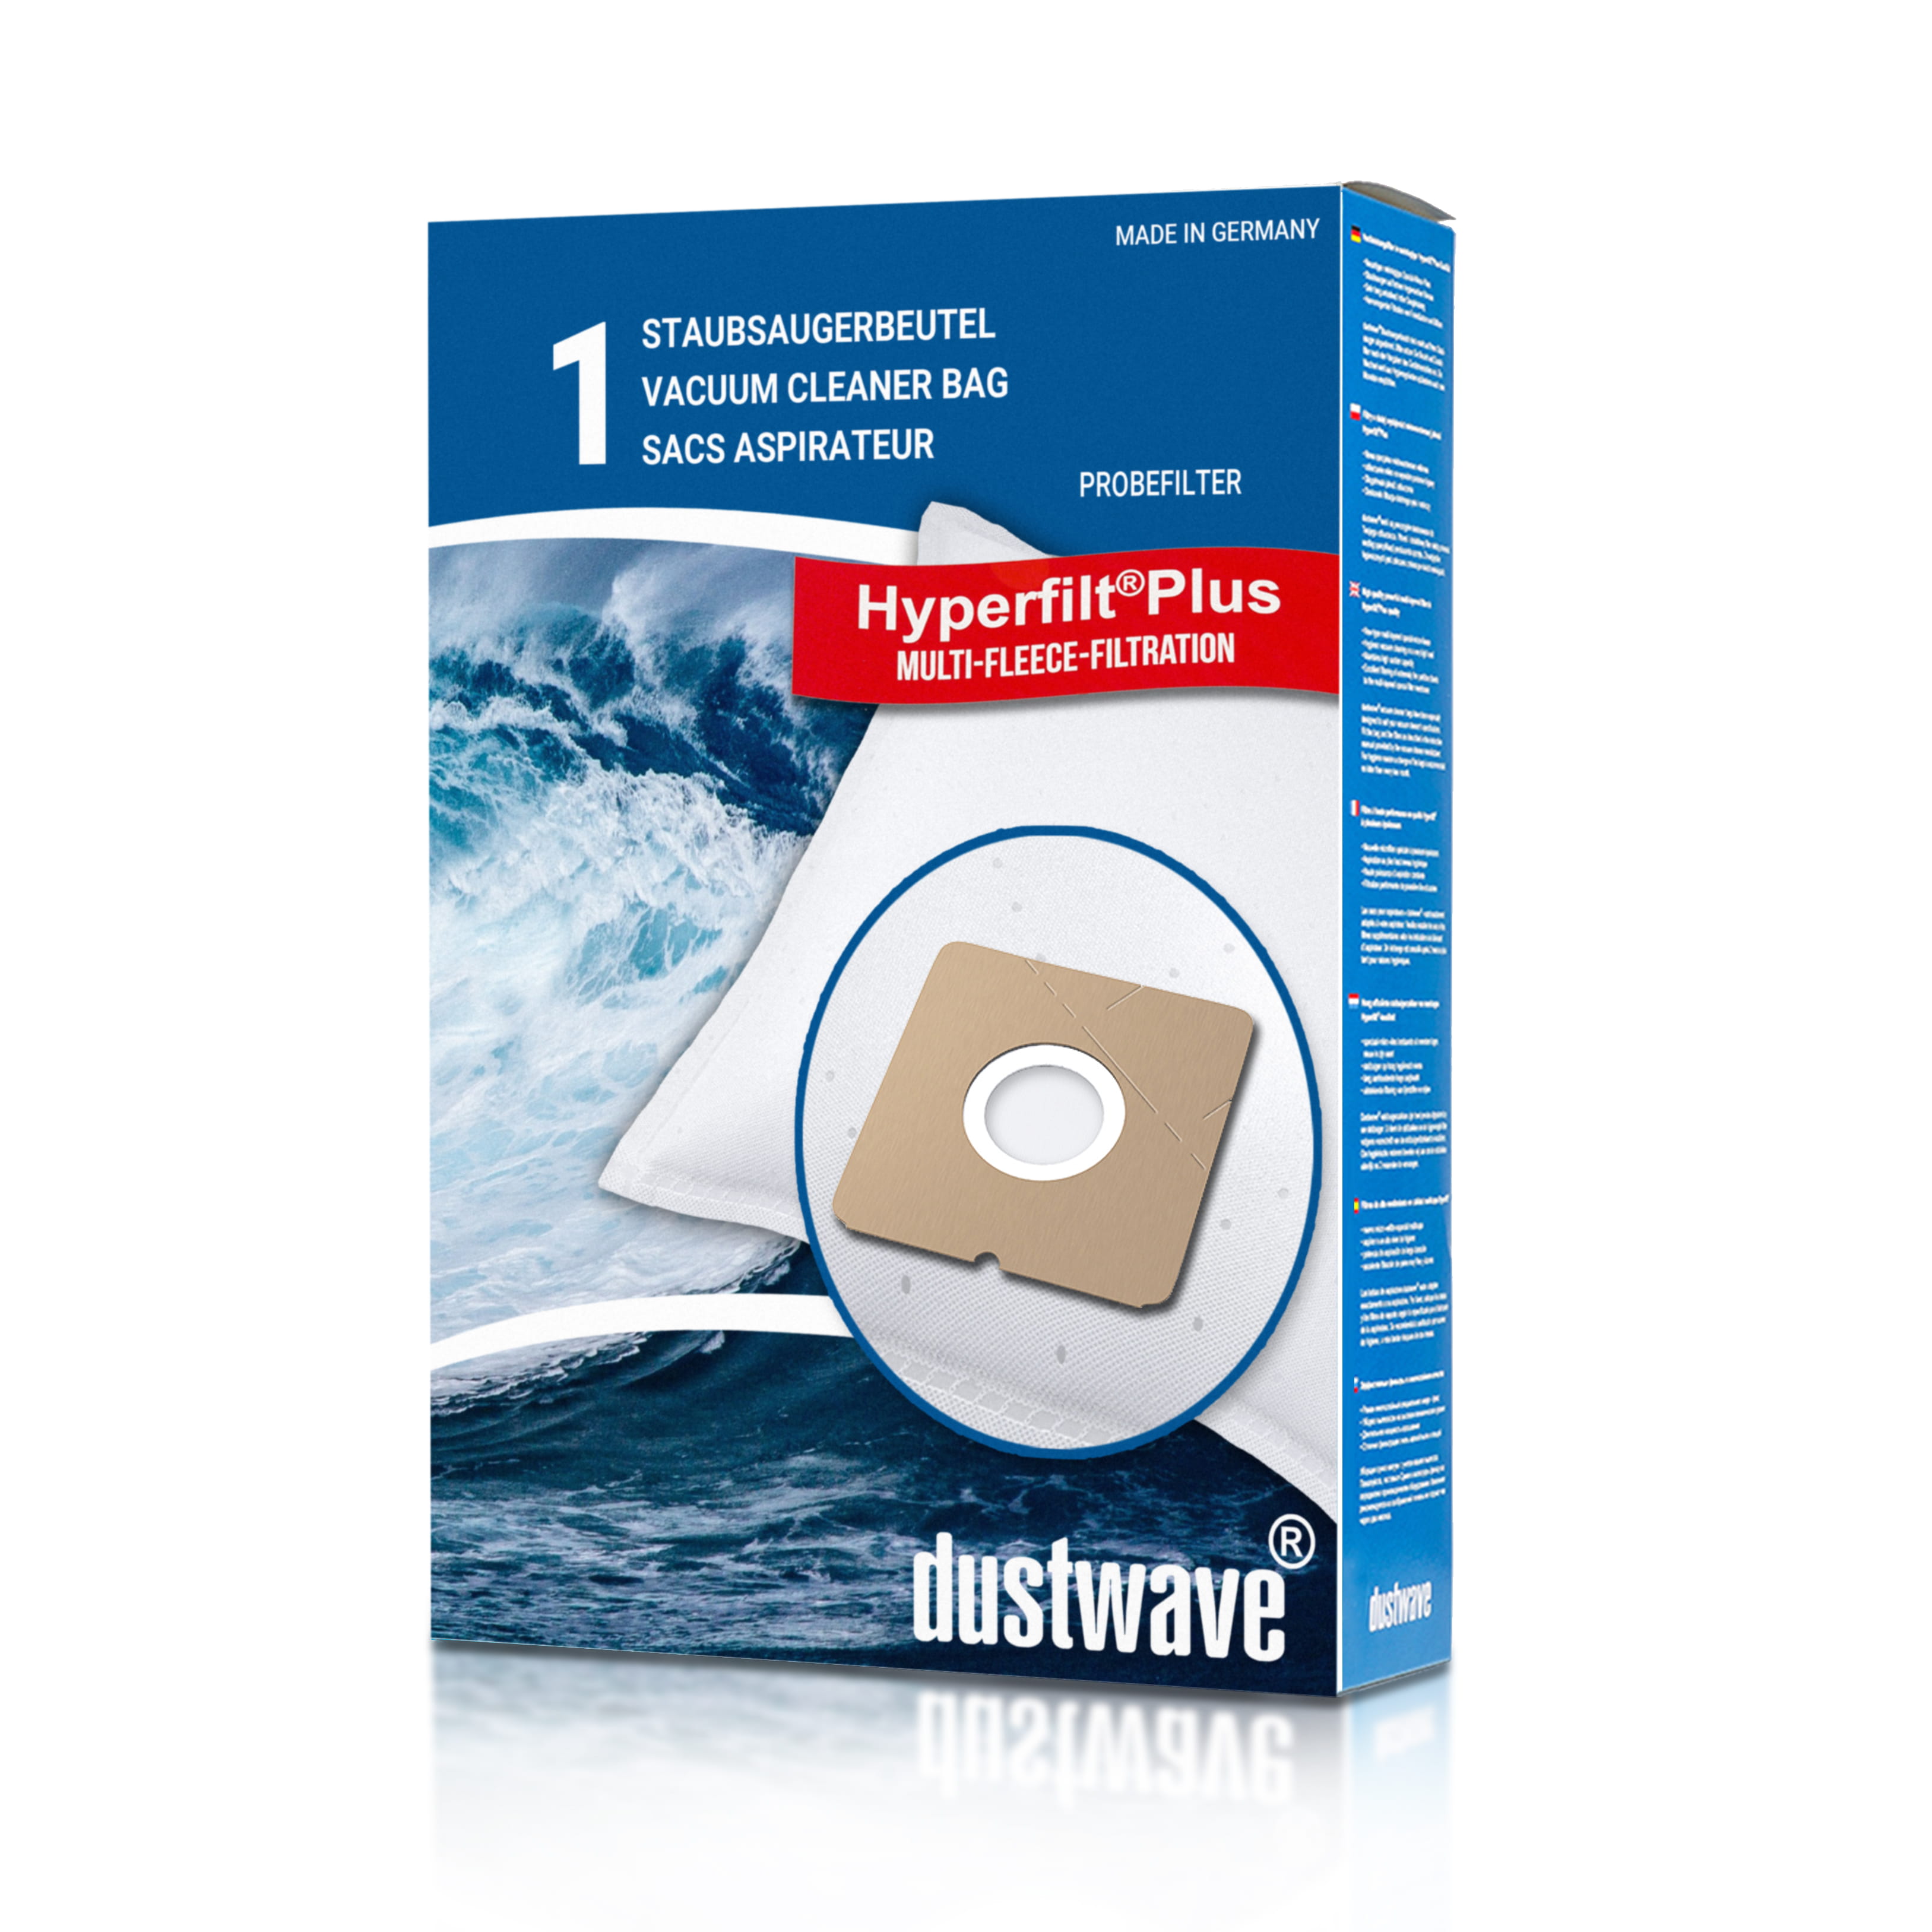 Dustwave® 1 Staubsaugerbeutel für Bomann BS 9014 CB / BS9014CB - hocheffizient mit Hygieneverschluss - Made in Germany